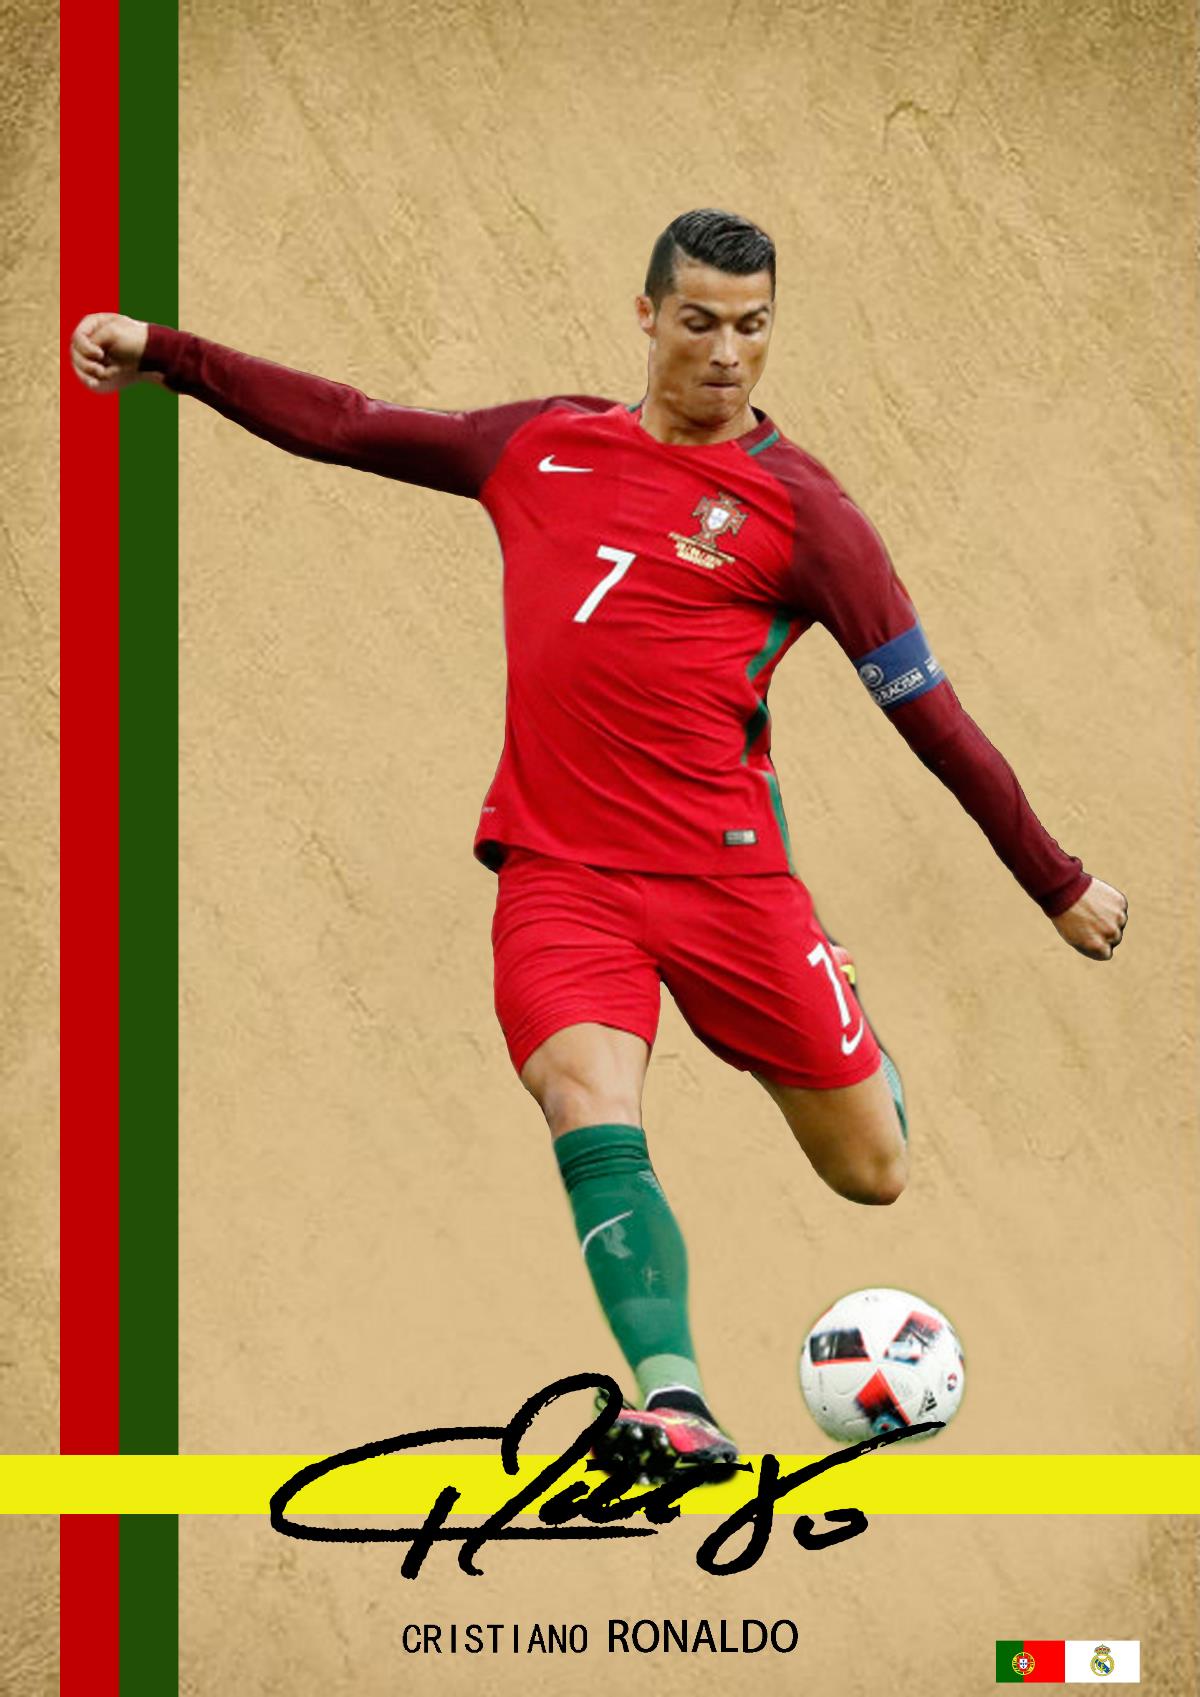 【足球系列】原创足球明星签名海报设计-C罗